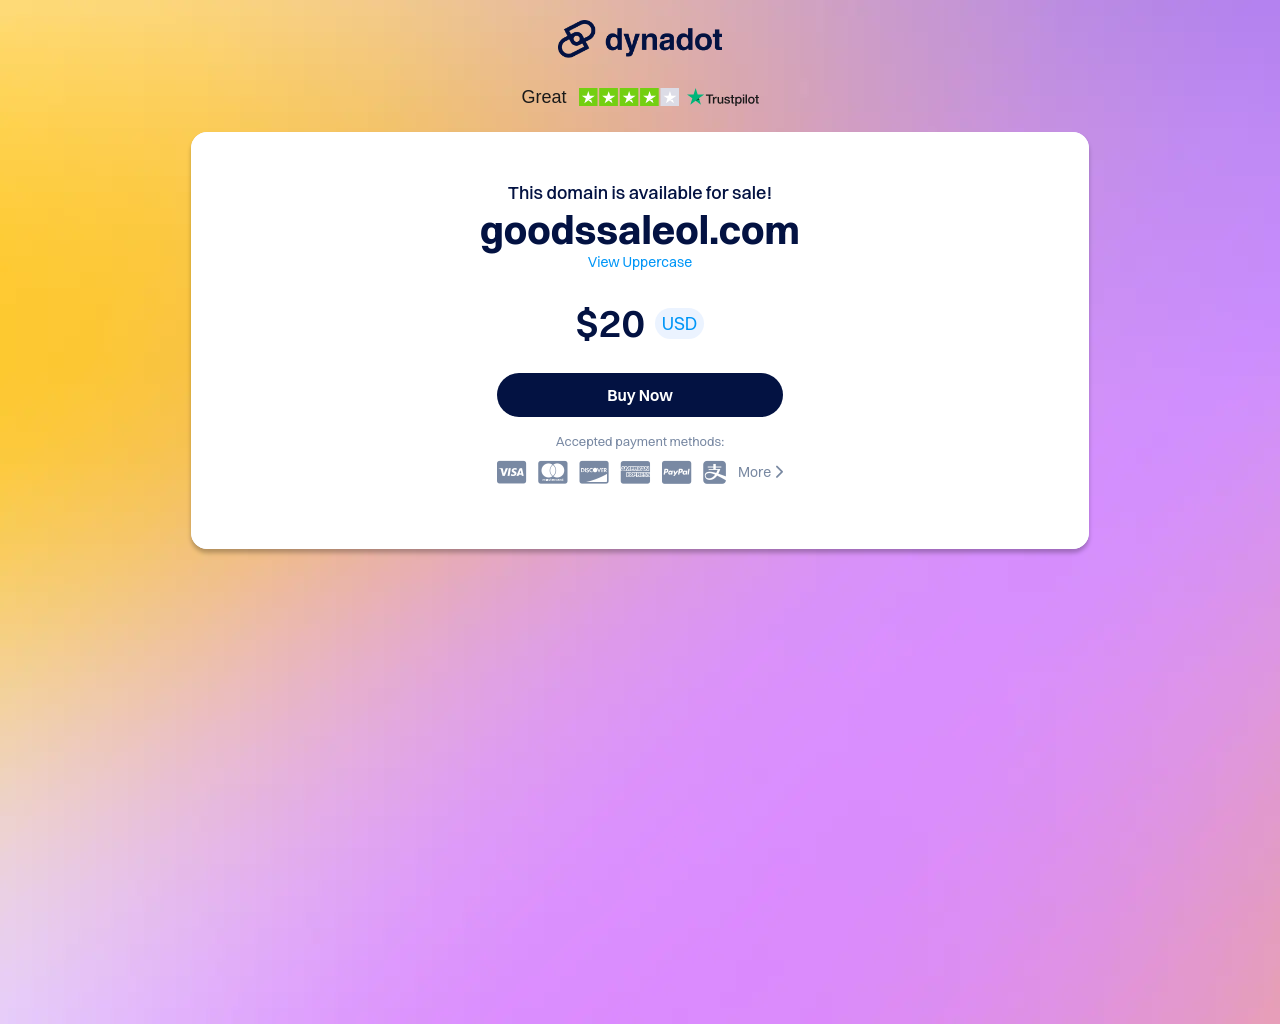 goodssaleol.com